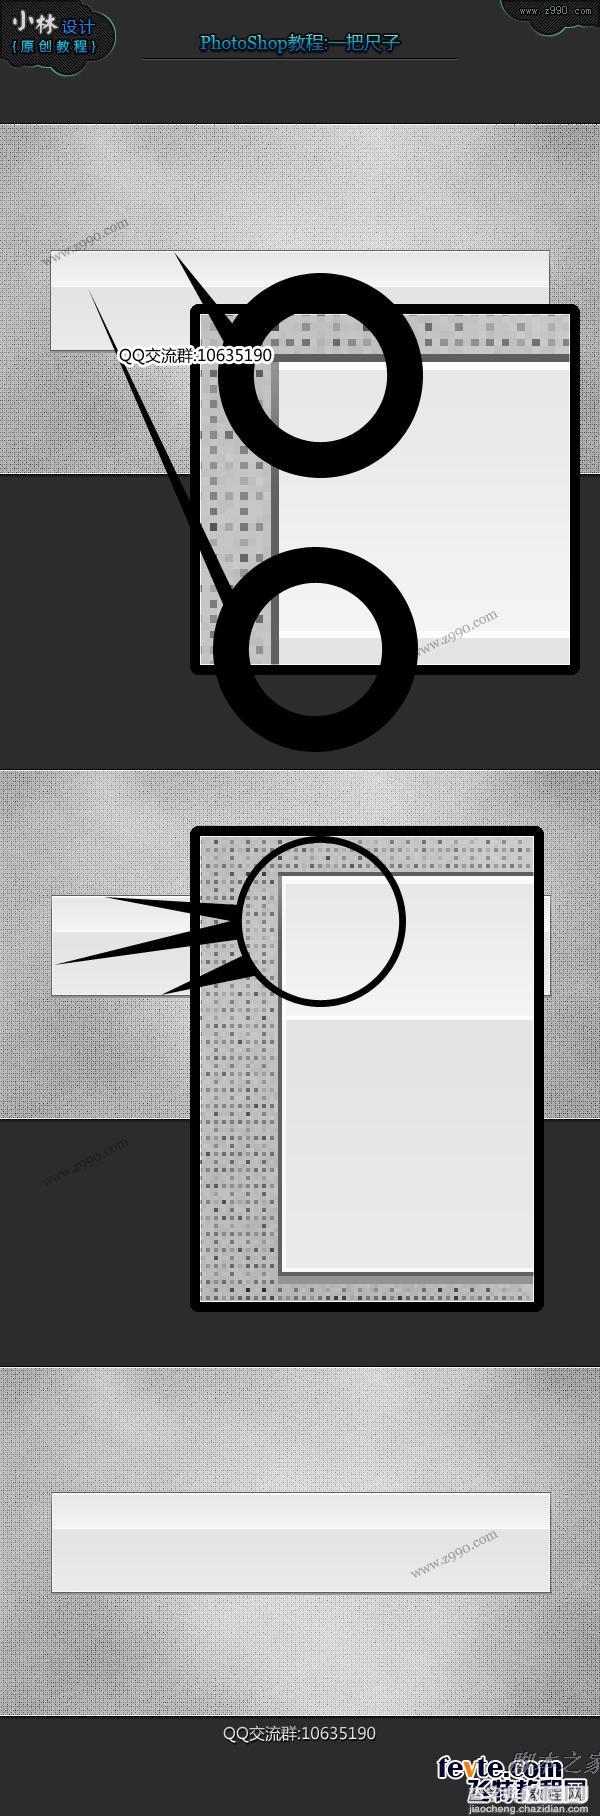 photoshop鼠绘逼真的透明尺子教程7